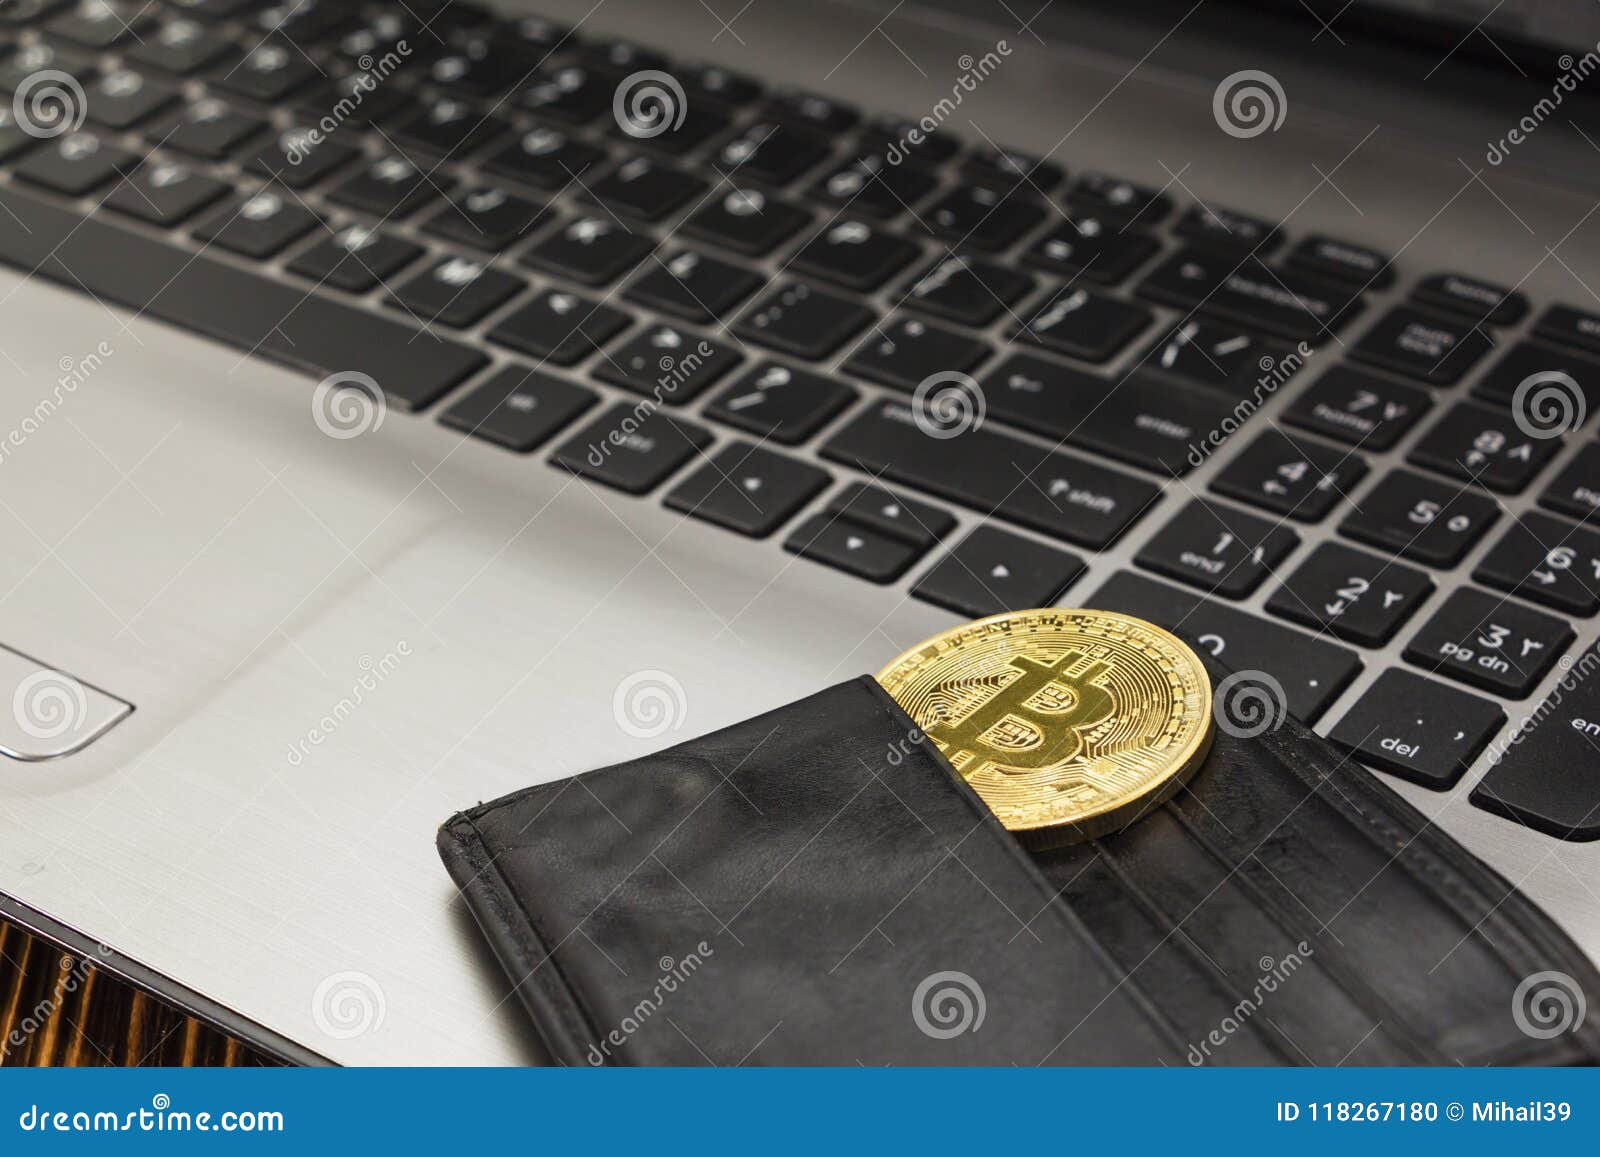 virtual bitcoin wallet